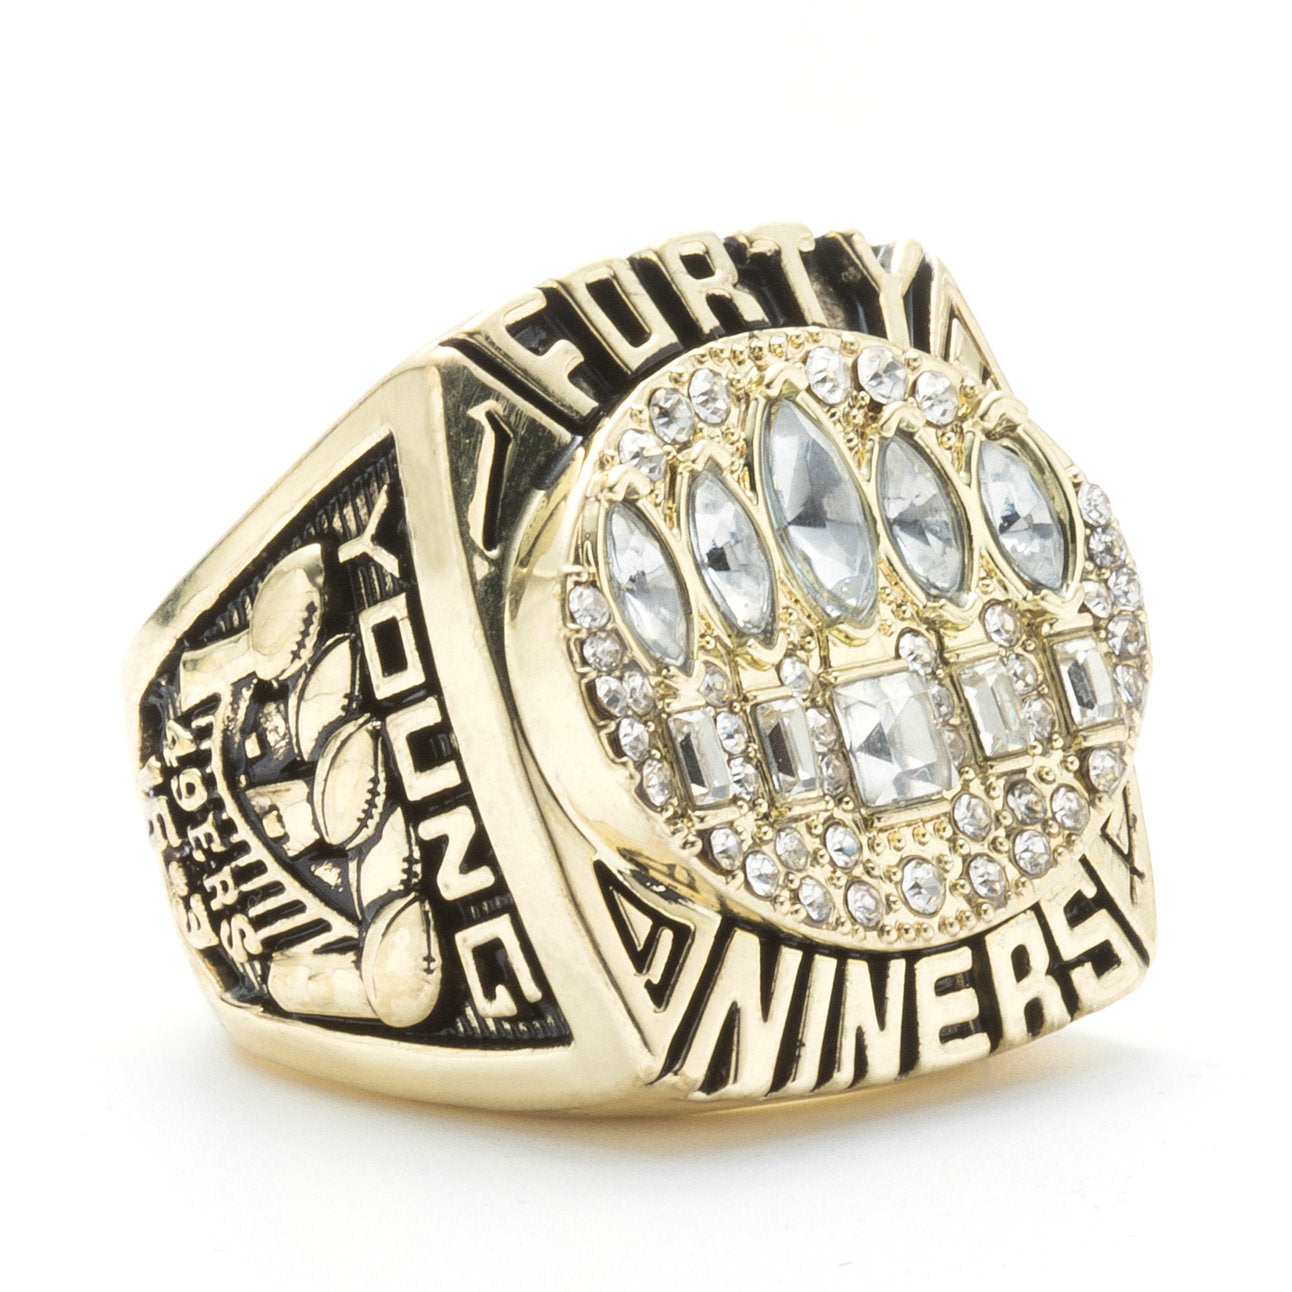 san francisco 49ers replica super bowl ring